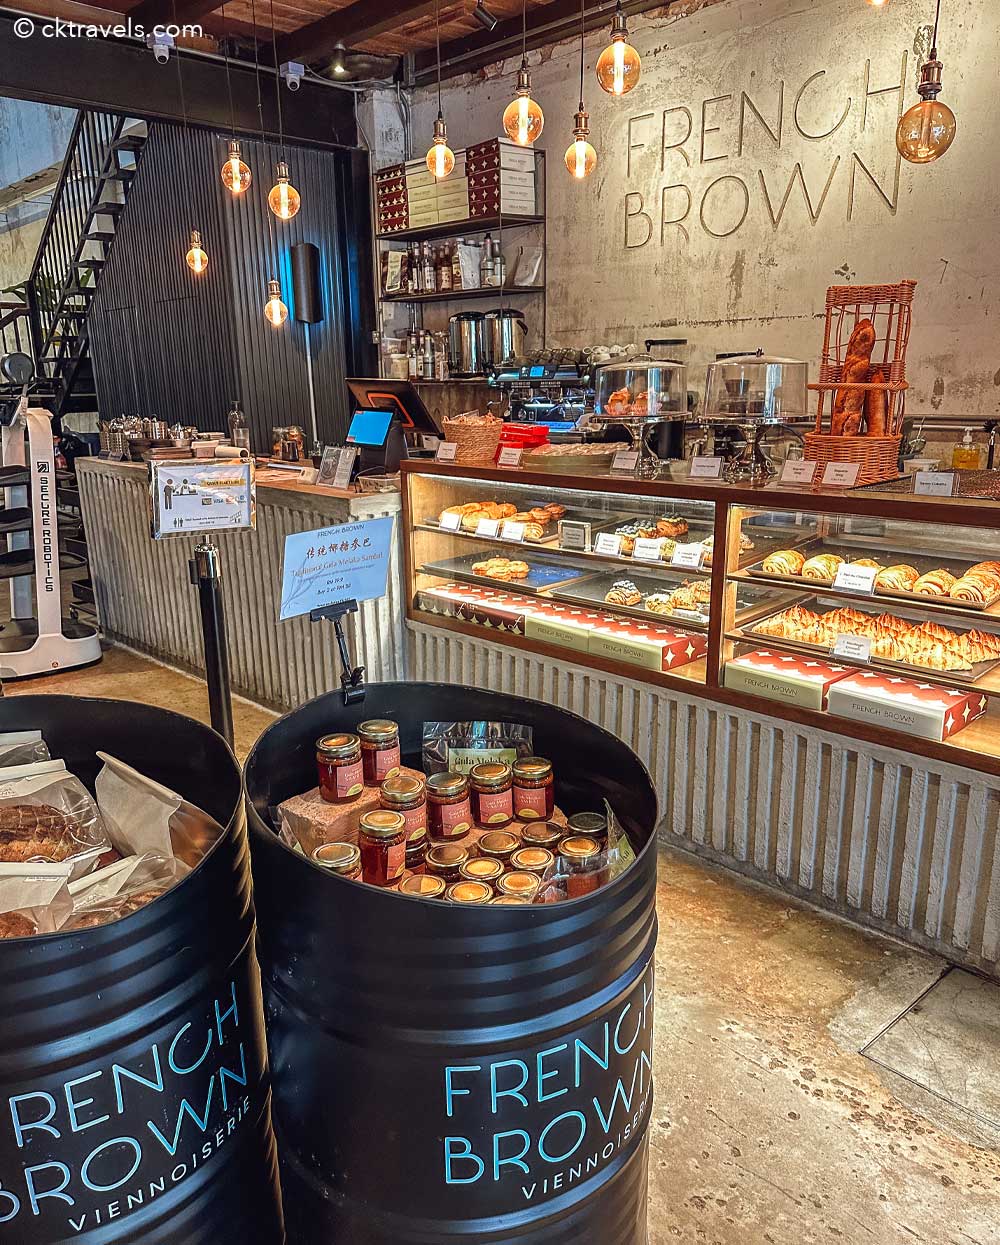 Cafes in Melaka - French Brown